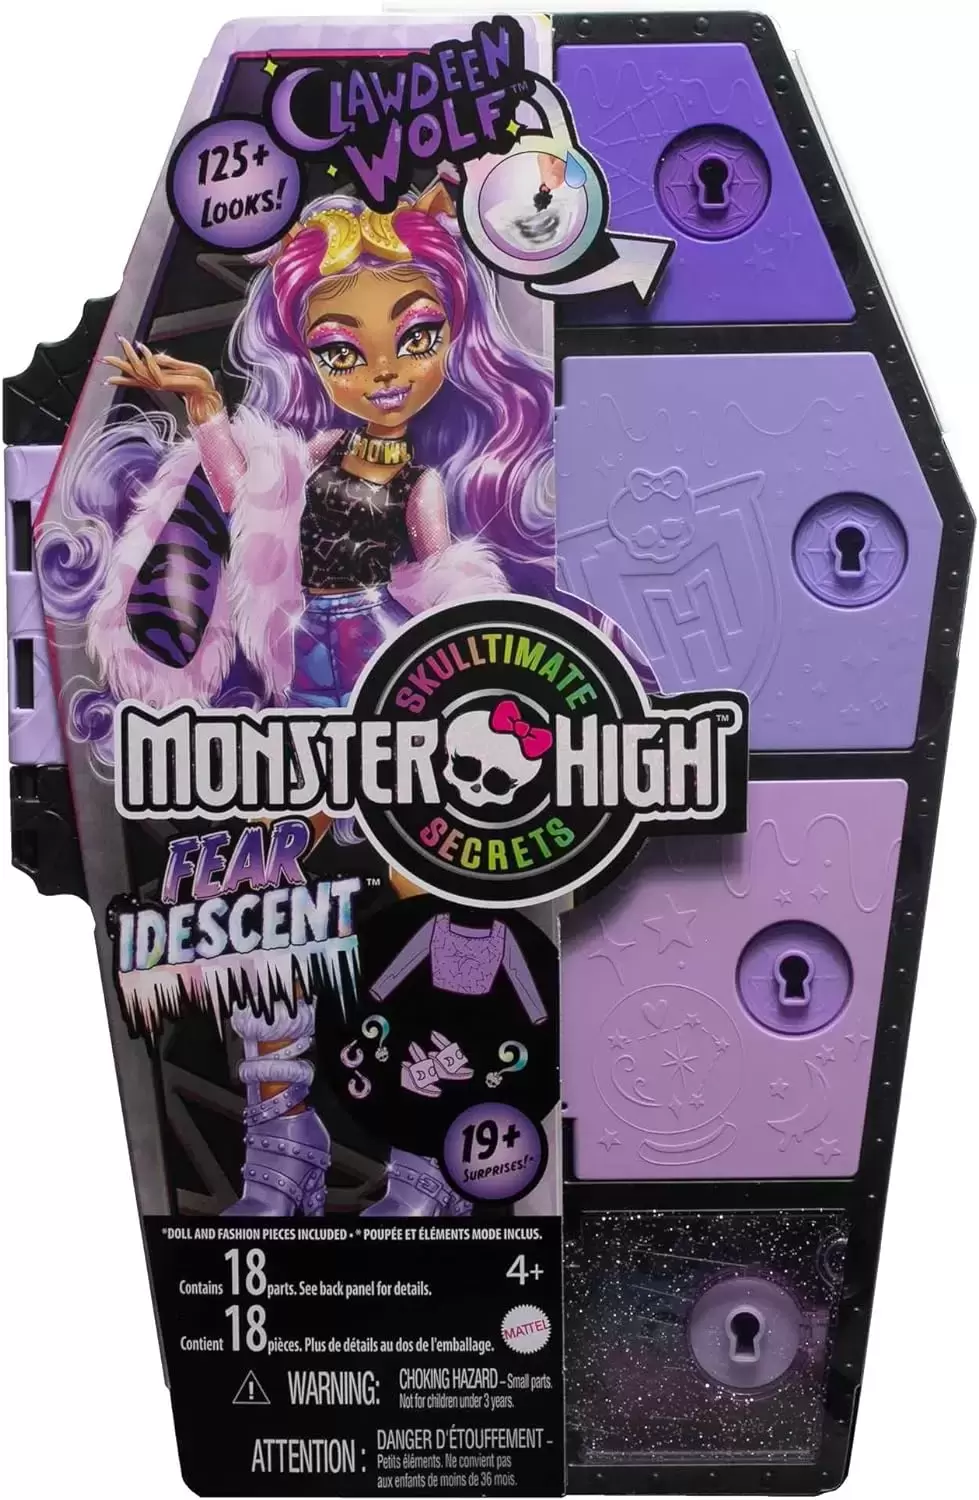 Monster High - Clawdeen Wolf Skulltimate Secrets - Fear Idescent